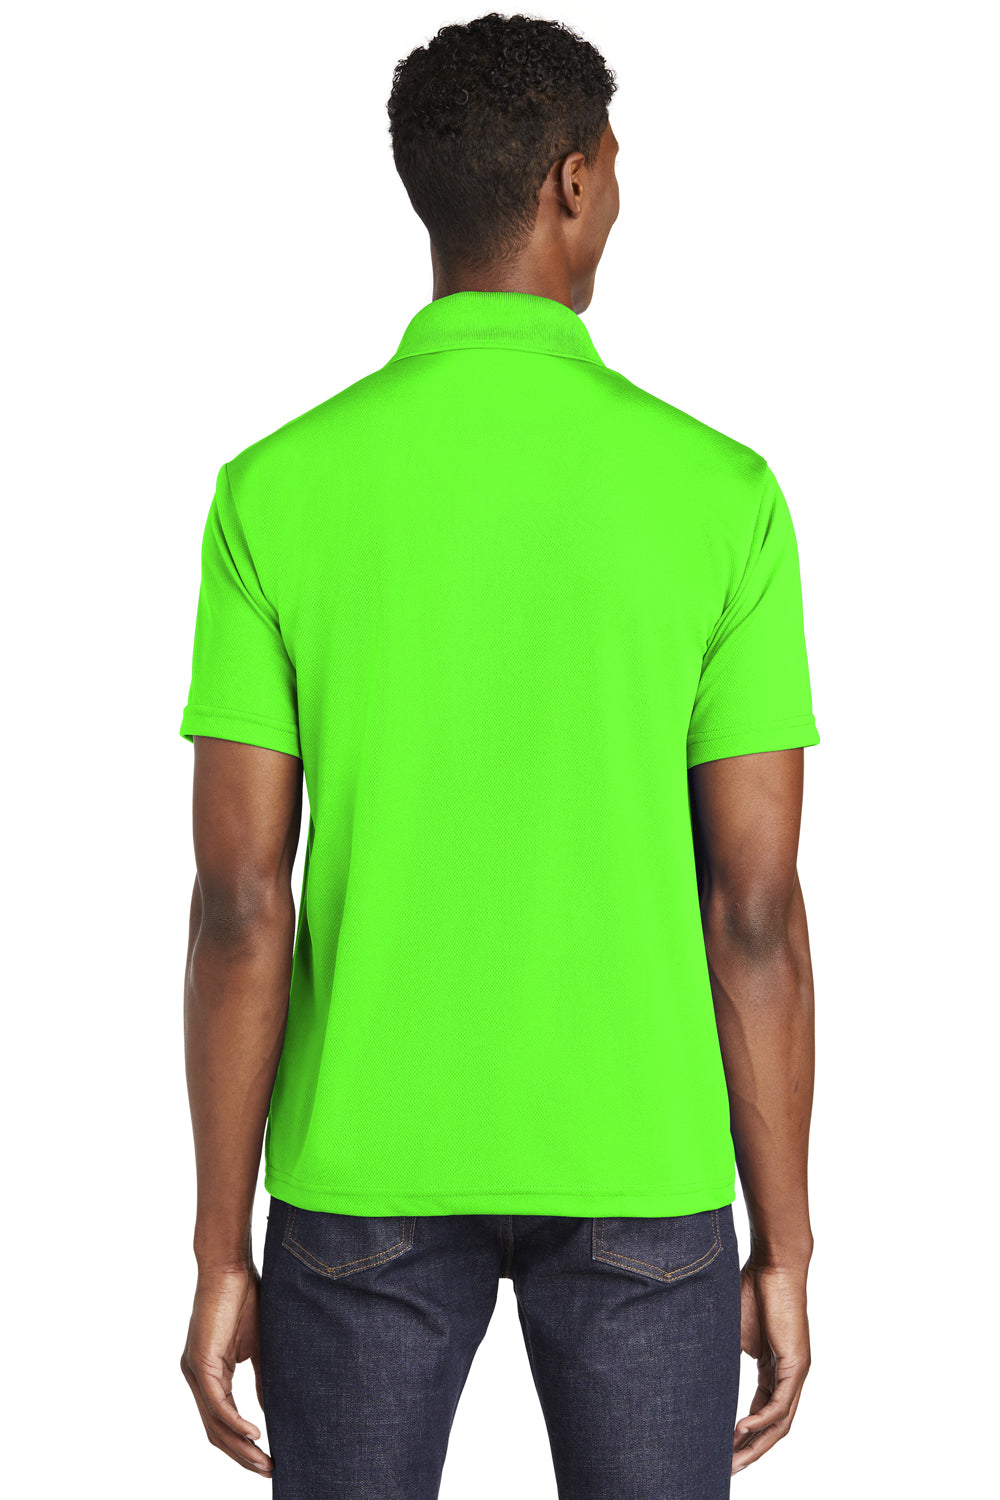 Sport-Tek ST640 Mens RacerMesh Moisture Wicking Short Sleeve Polo Shirt Neon Green Back